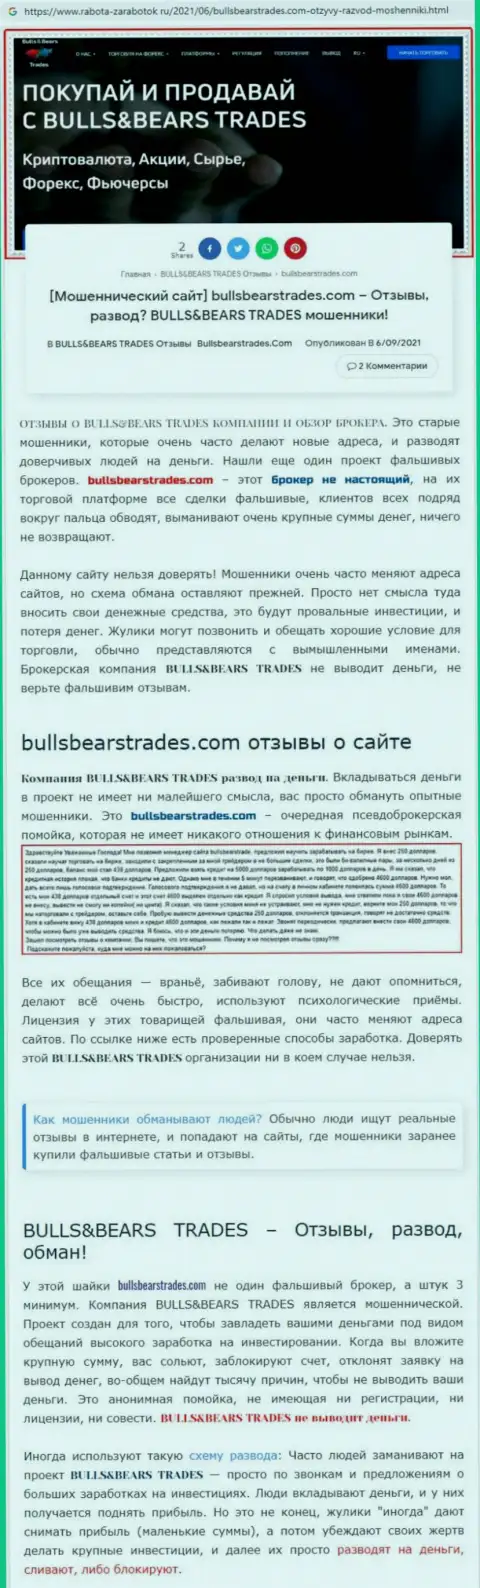 Обзор преступно действующей организации Bulls Bears Trades о том, как обувает клиентов